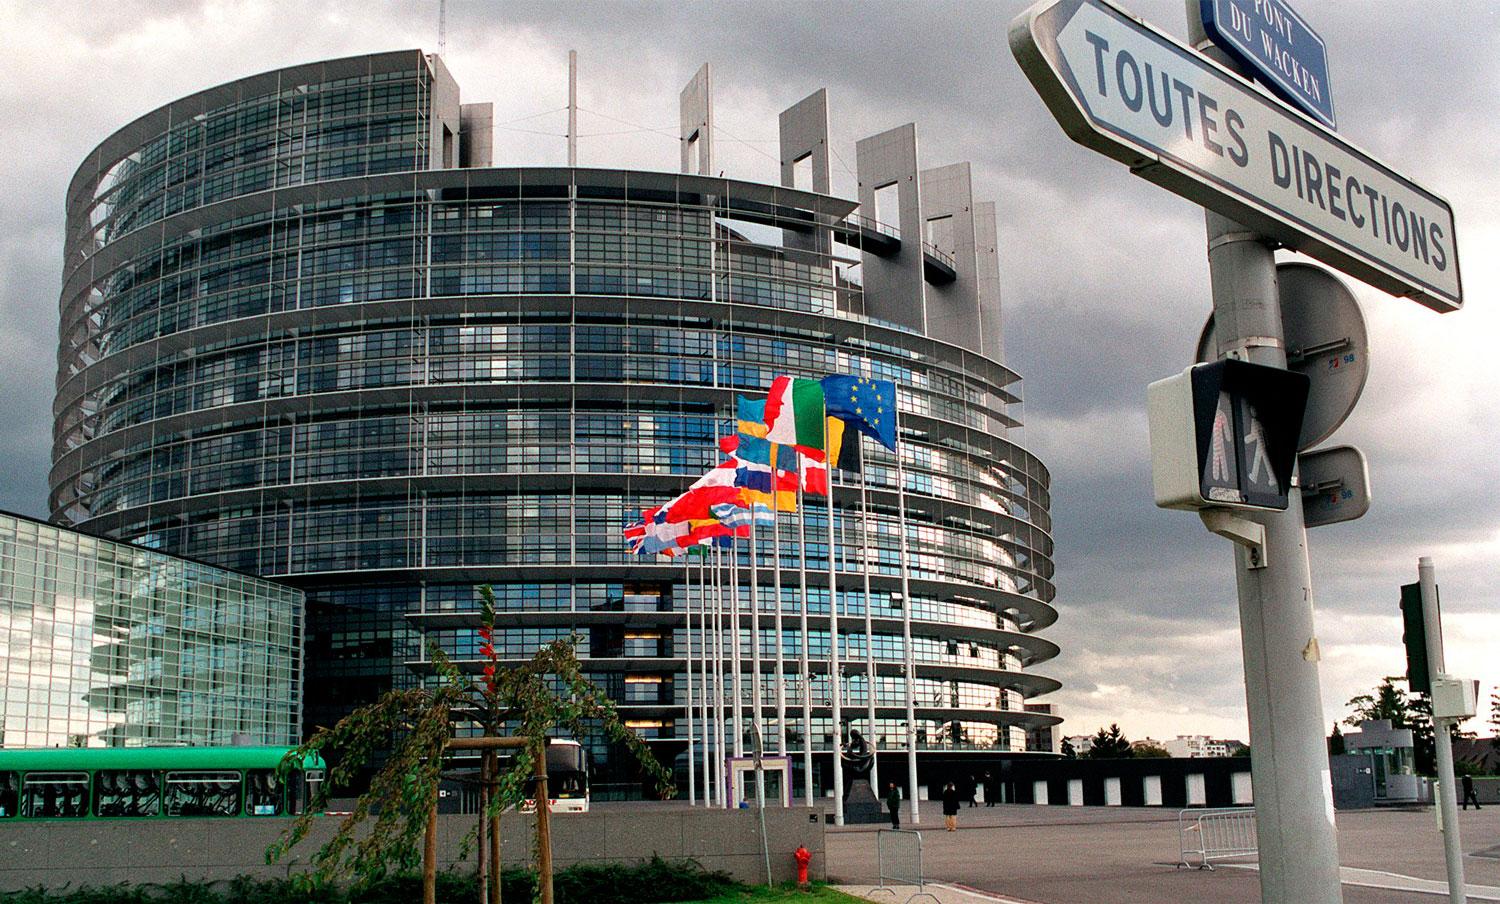 EU-parlementet i Strasbourg nämns som en plats där det fanns planer på ett terrordåd.